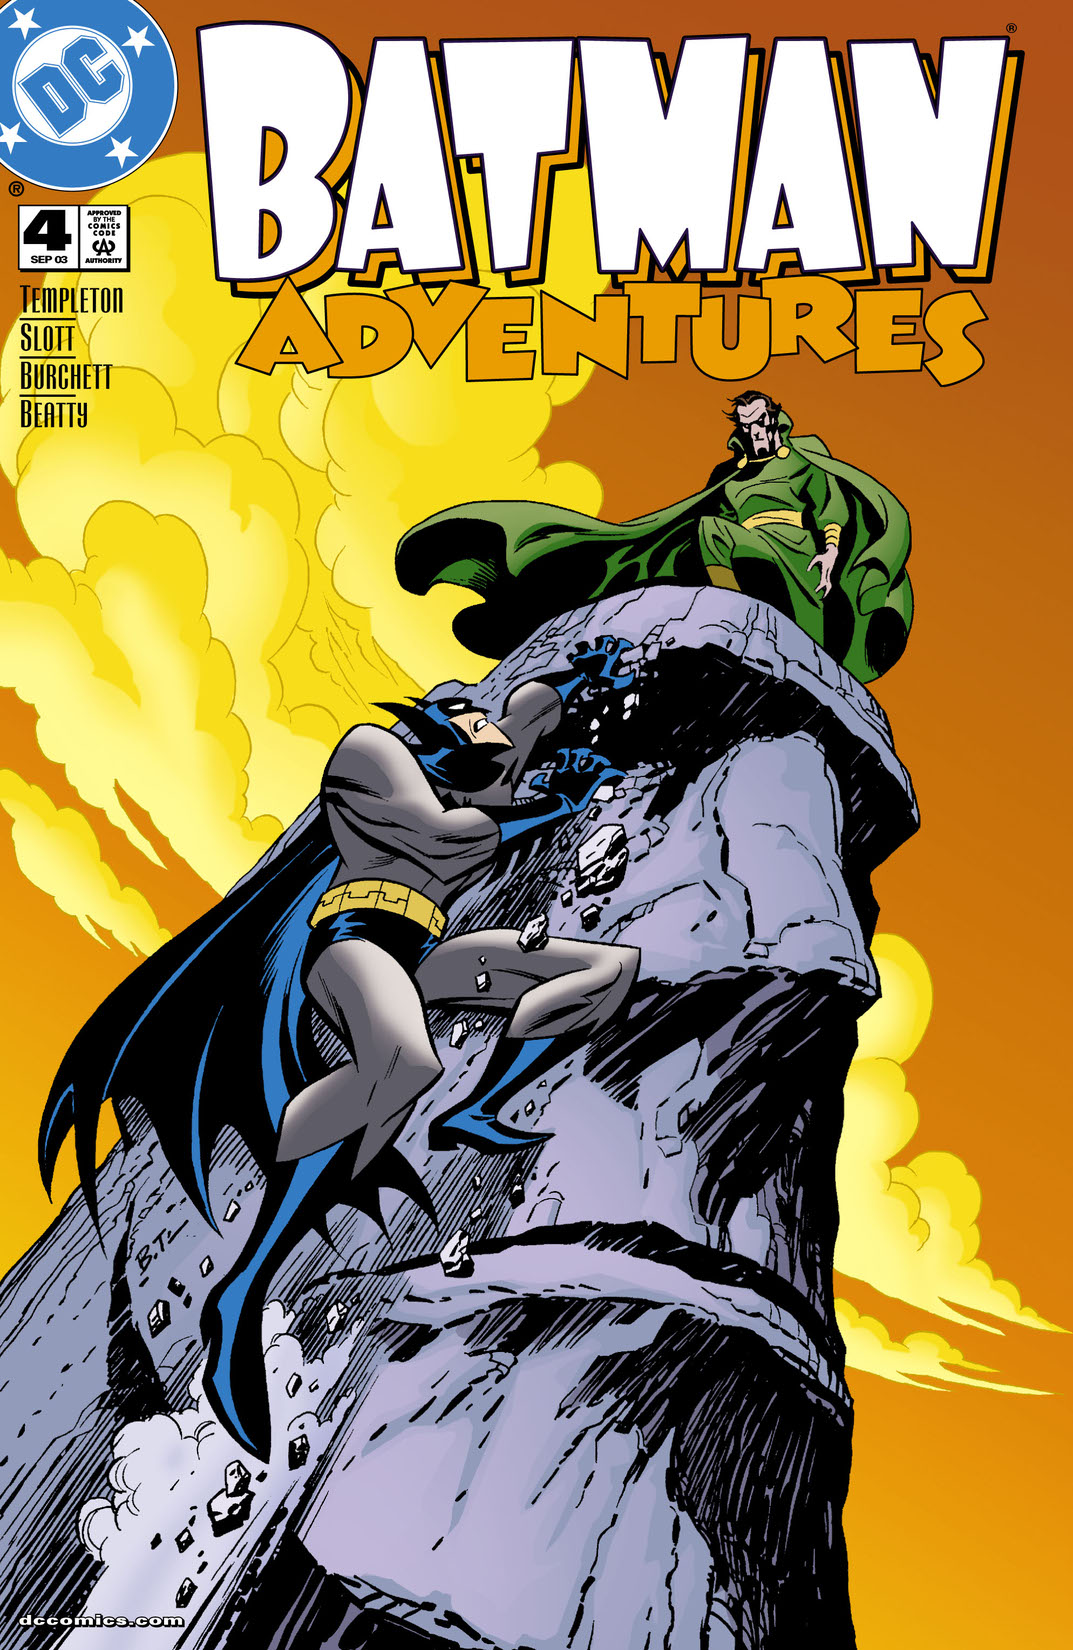 Batman Adventures #4 preview images